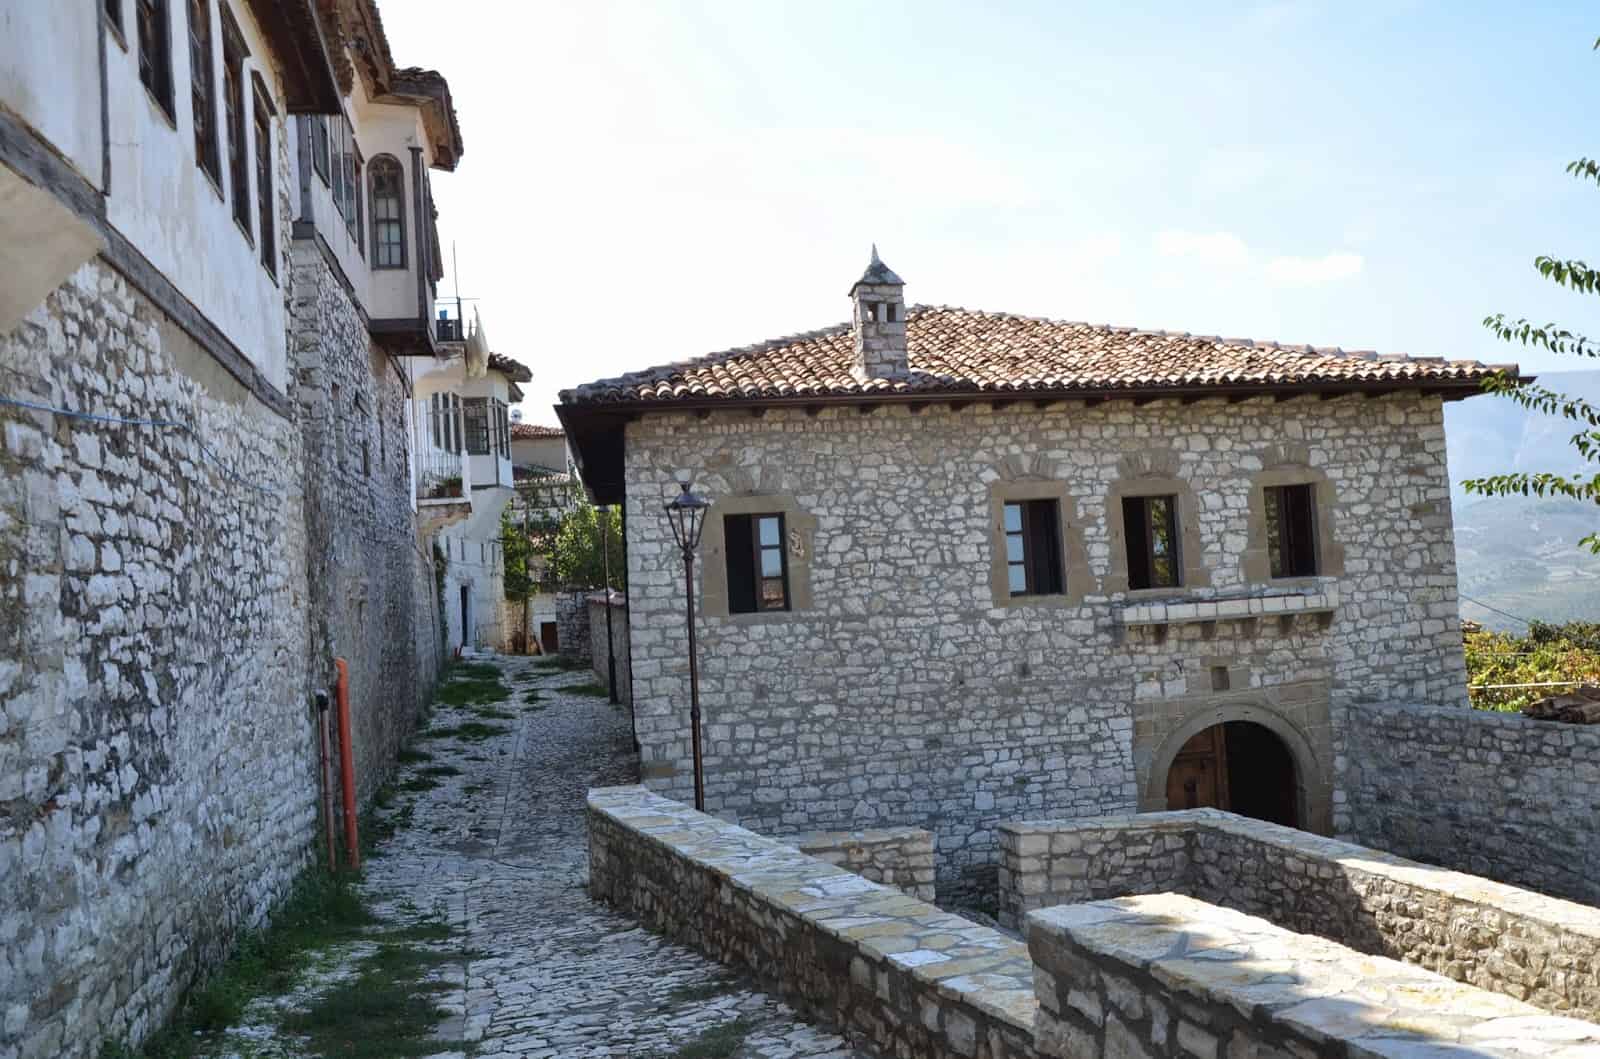 Berat Castle in Berat, Albania